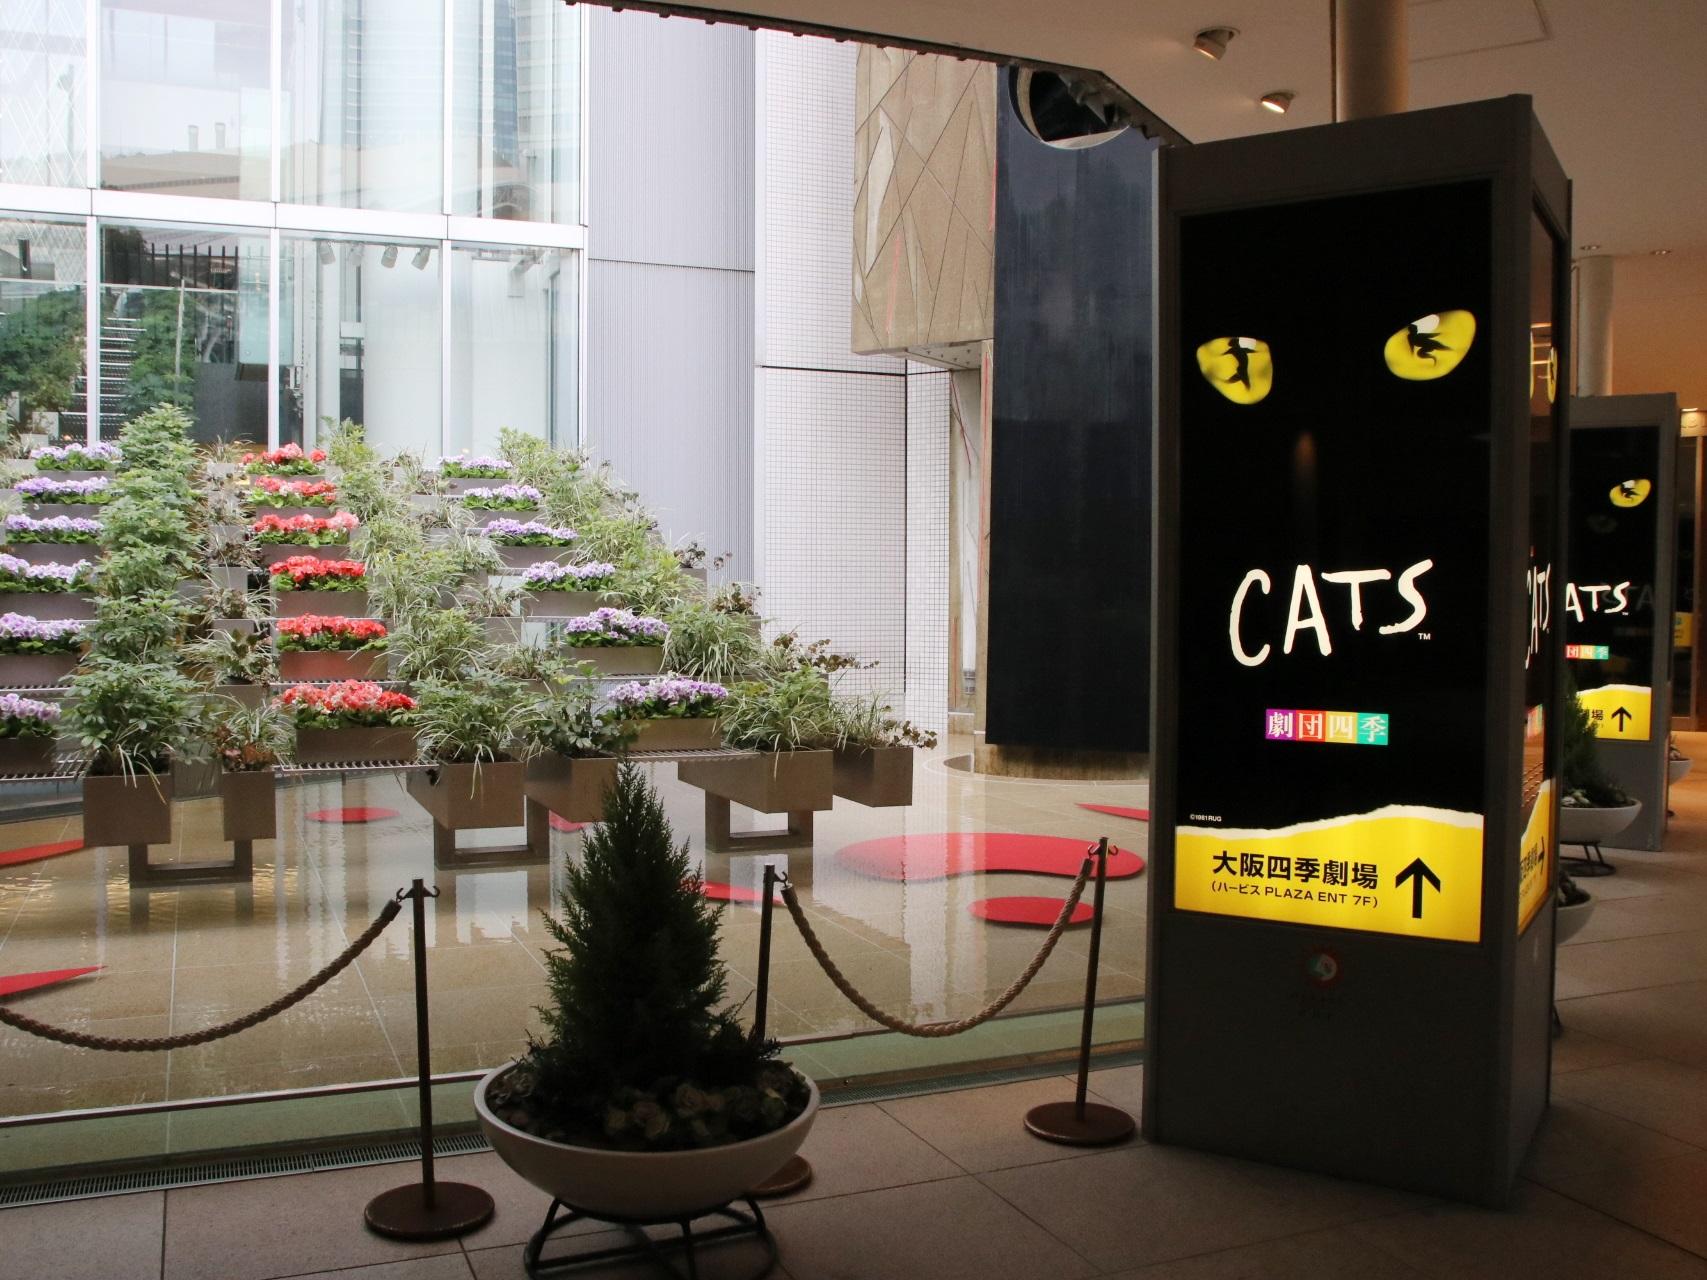 劇団四季 ミュージカル「CATS」に学ぶ観劇の世界